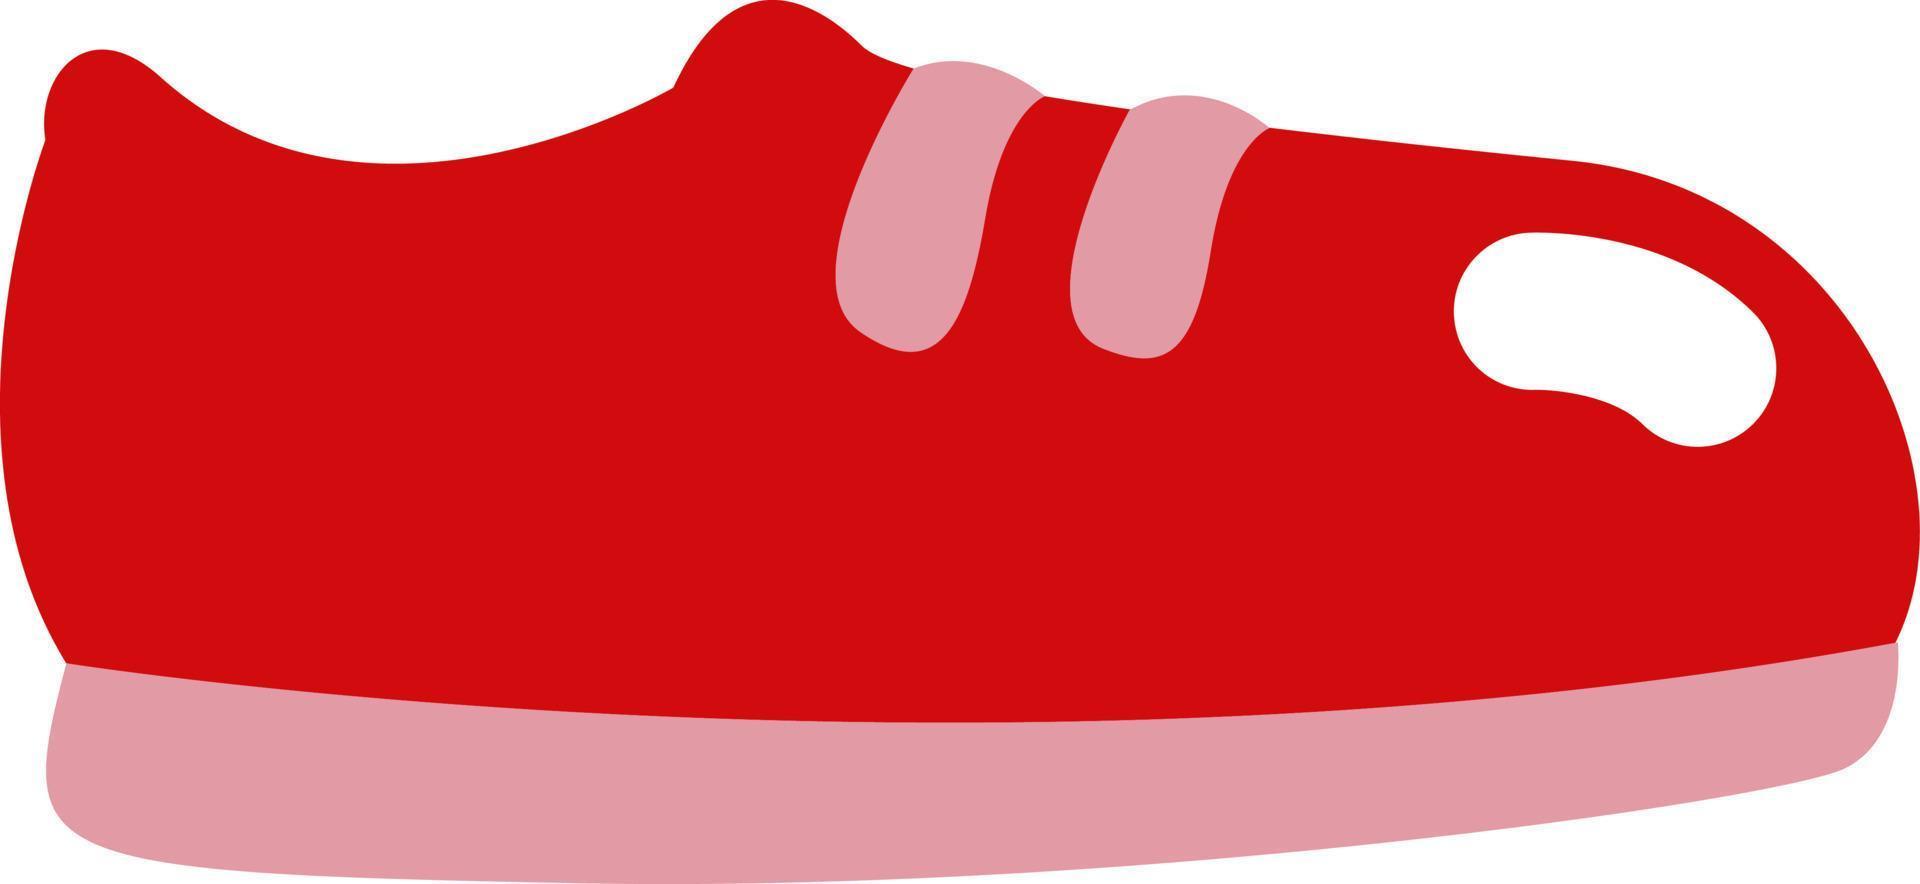 zapatillas rojas, ilustración, vector sobre fondo blanco.